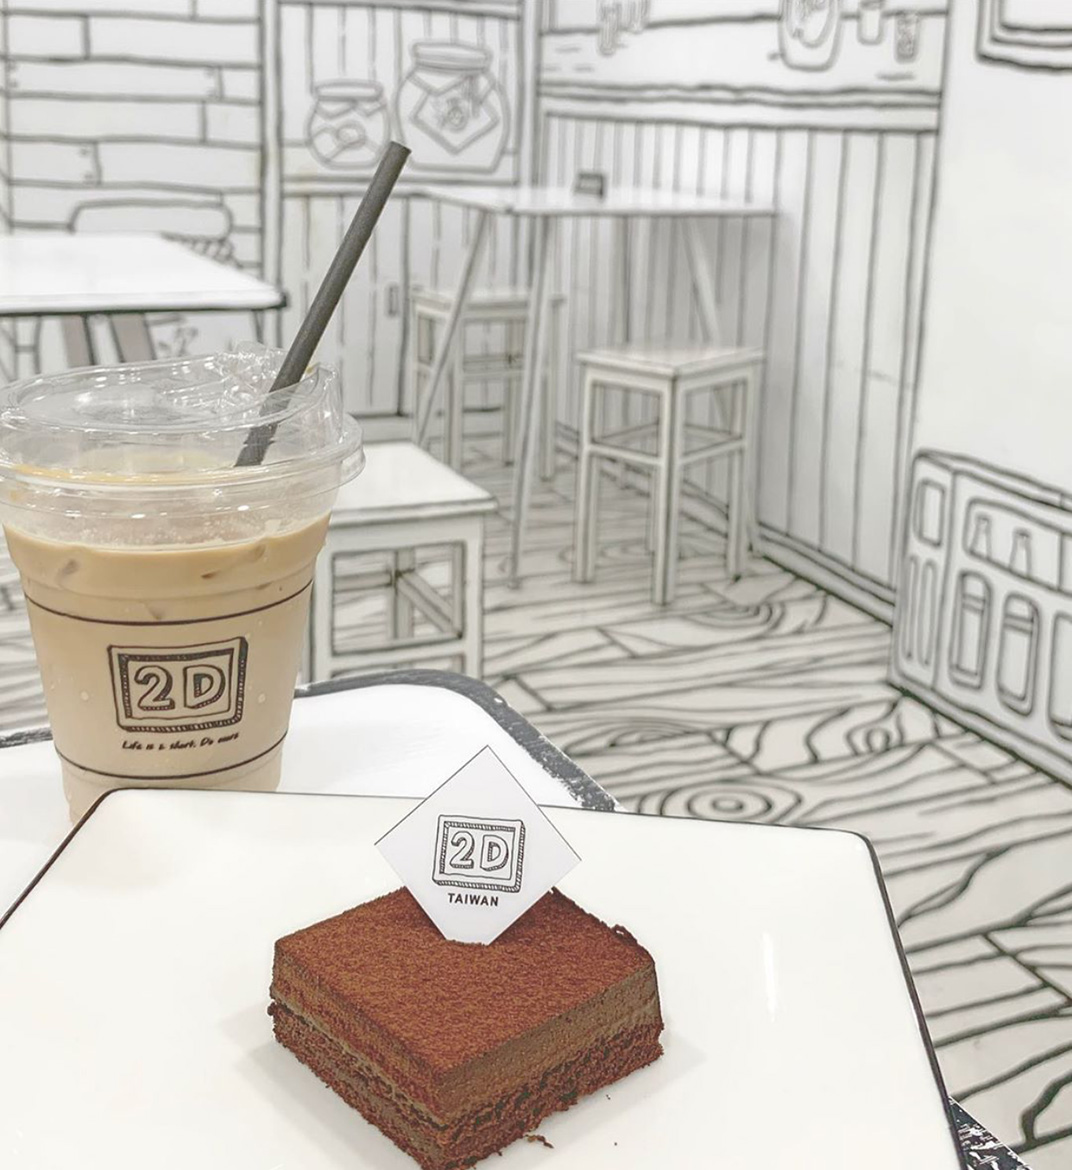 2d.cafe咖啡馆 台湾 台湾 咖啡店 cafe 手绘 插图 创意空间 logo设计 vi设计 空间设计